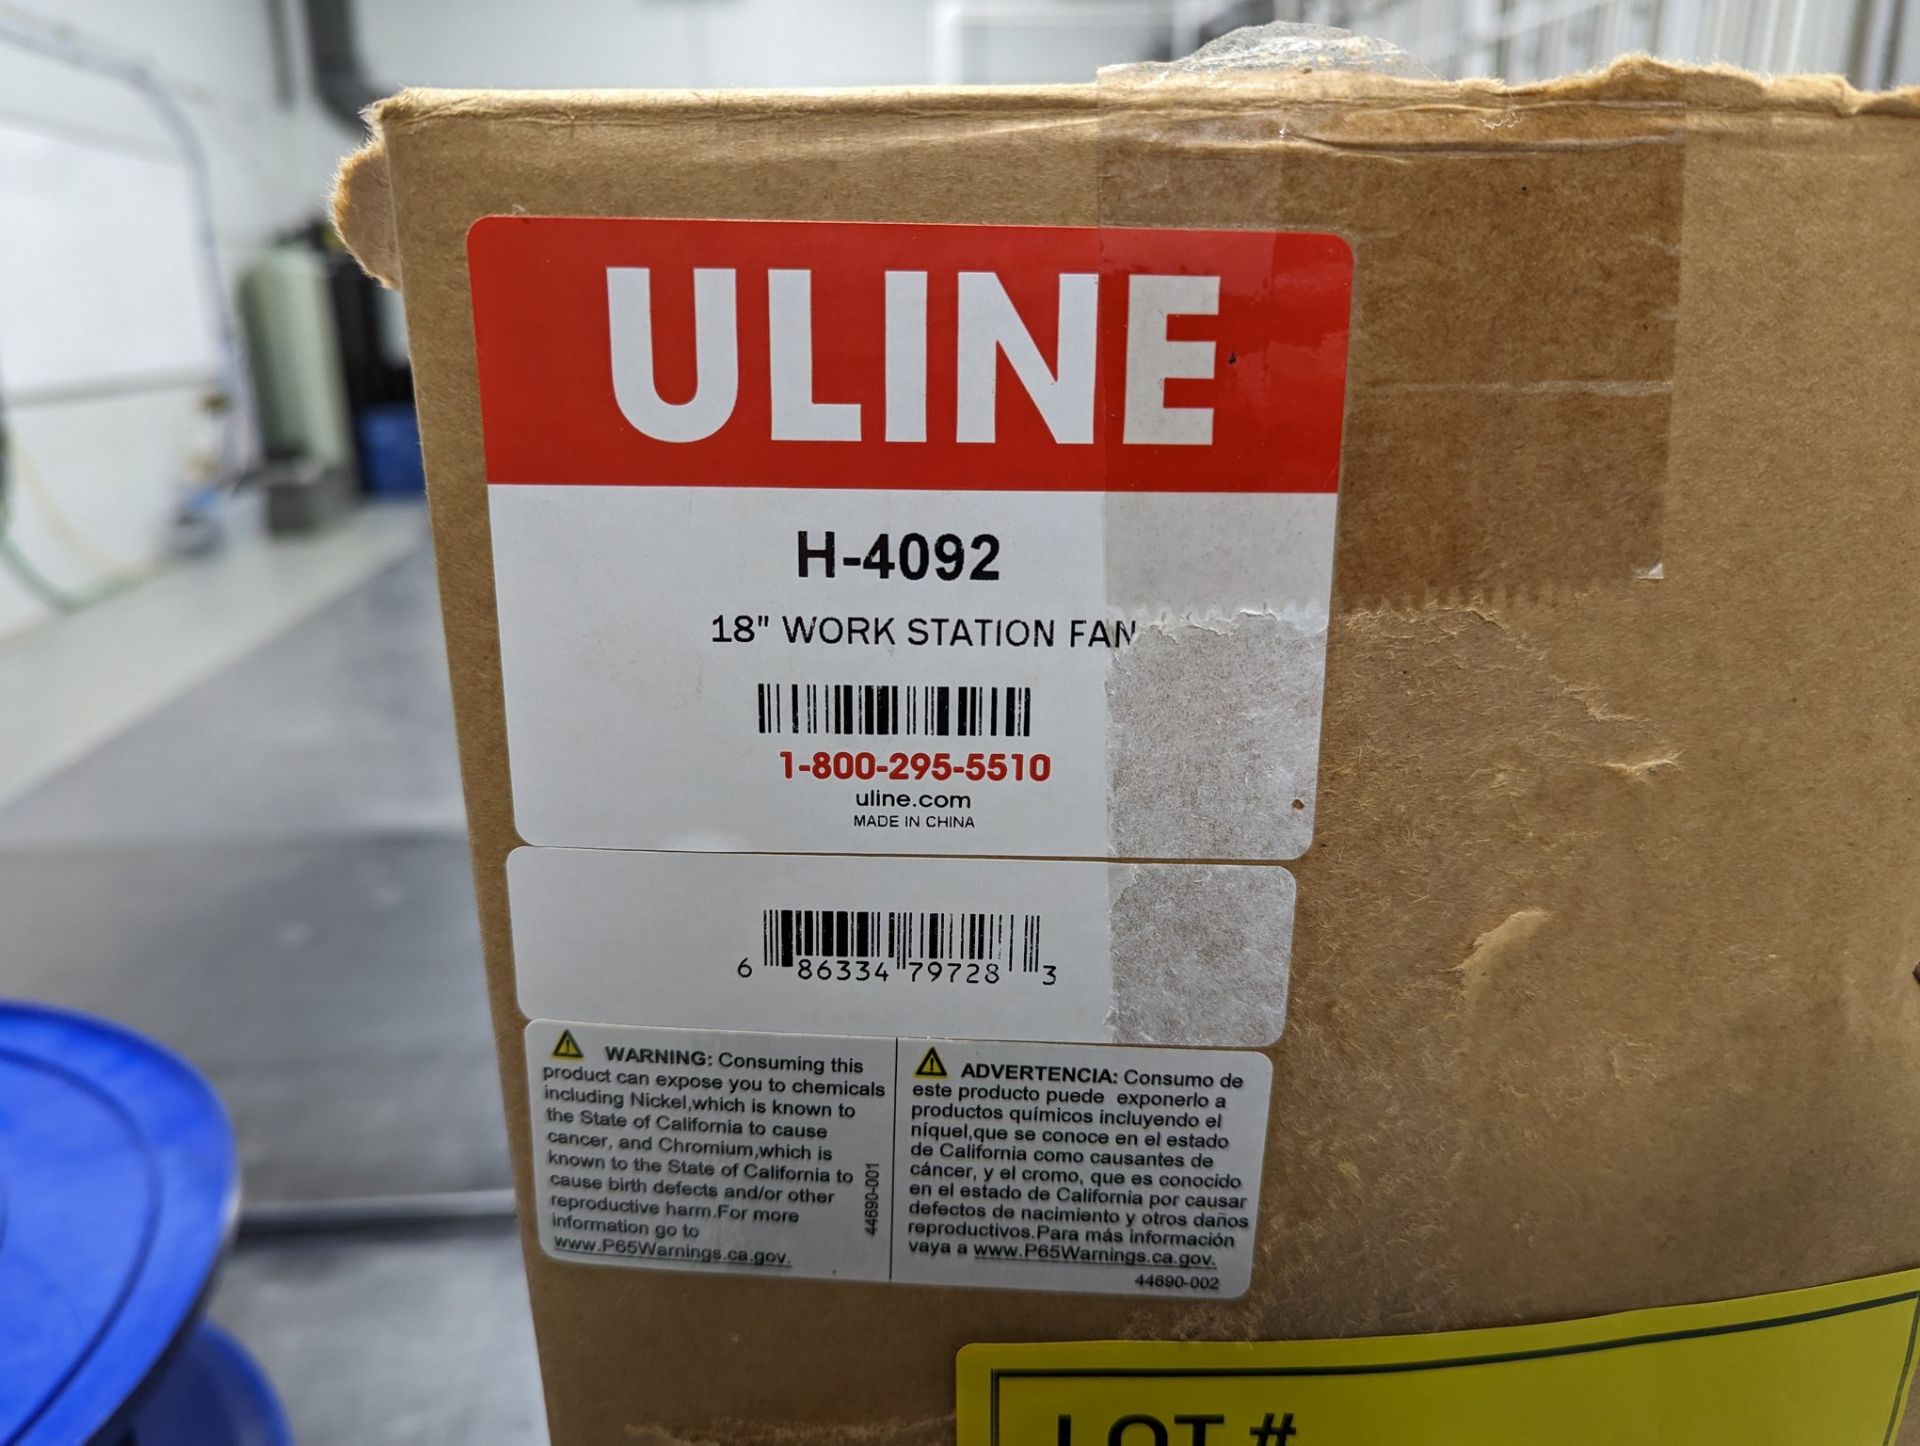 ULINE H-4092 18" WORK STATION FAN - Image 2 of 3